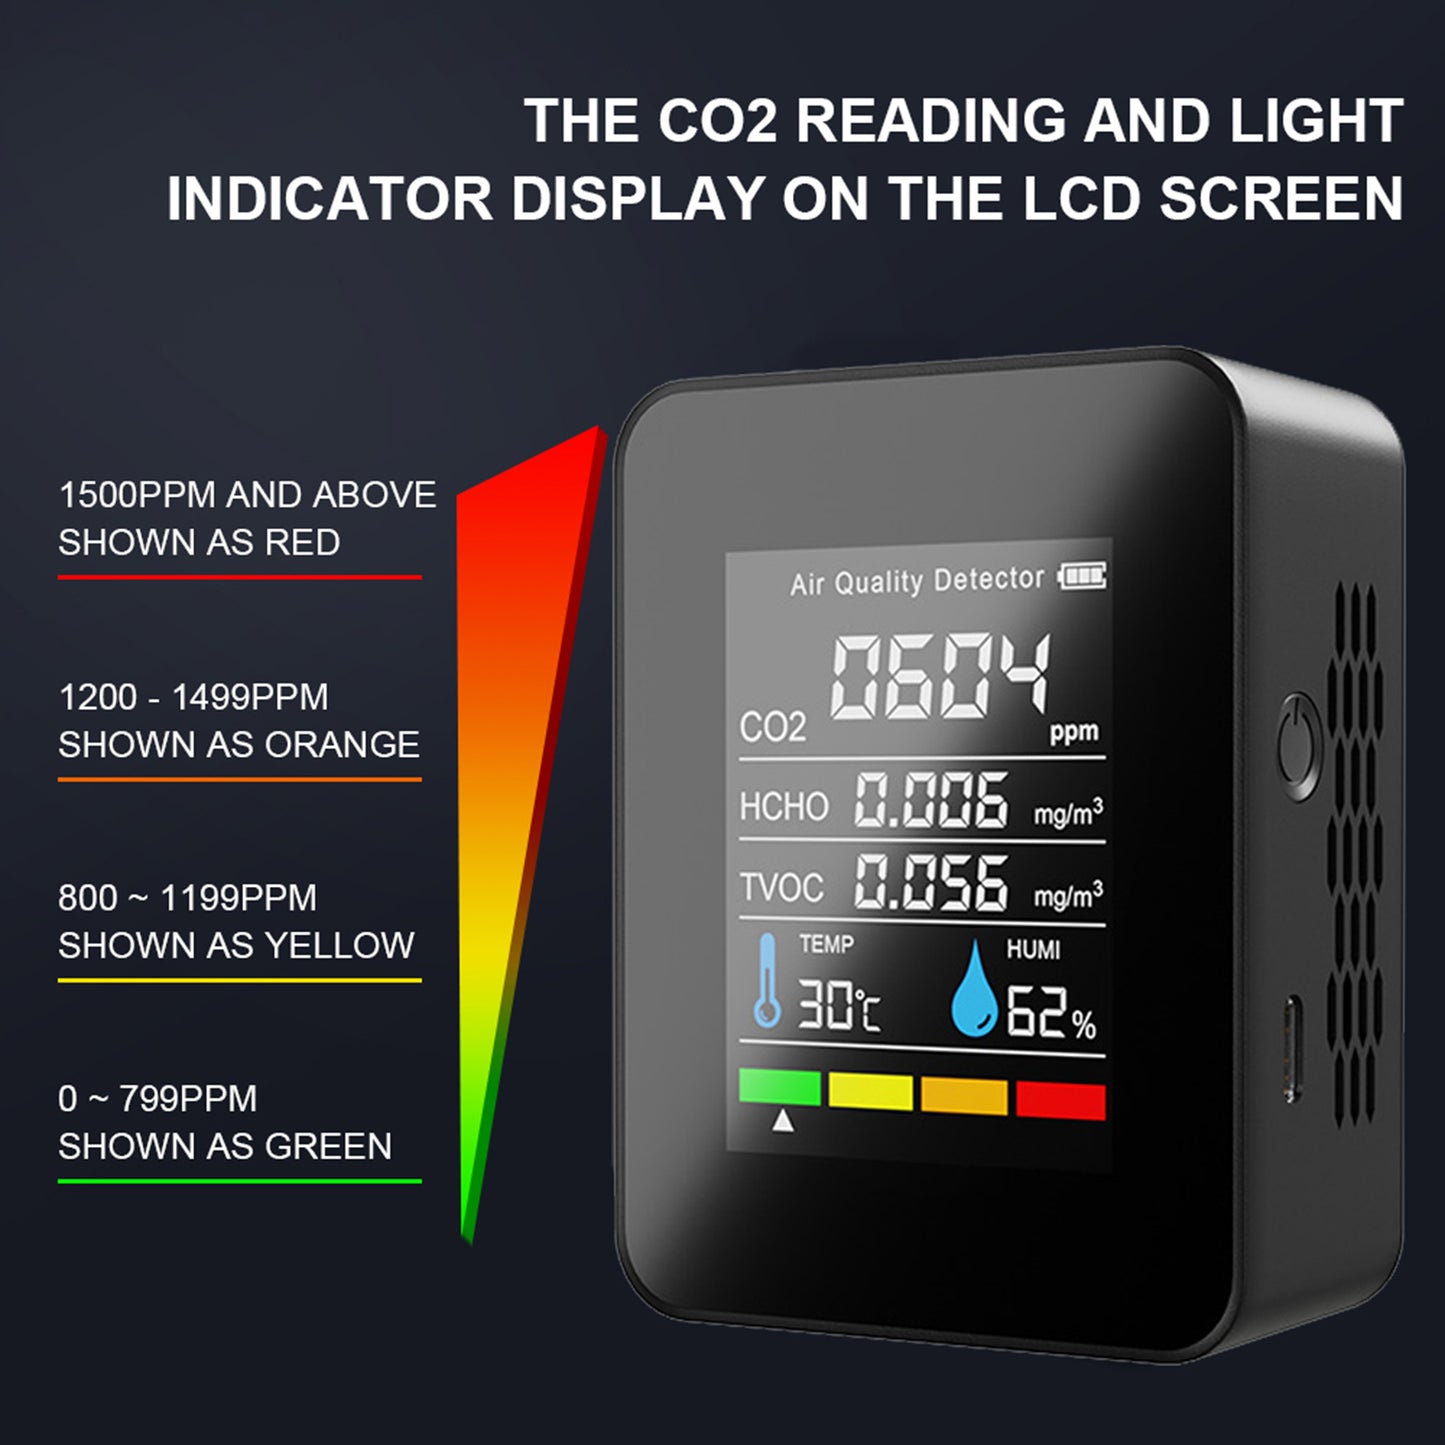 Détecteur de CO2 5 en 1 moniteur de qualité de l'air Hcho Tvoc testeur d'humidité de la température